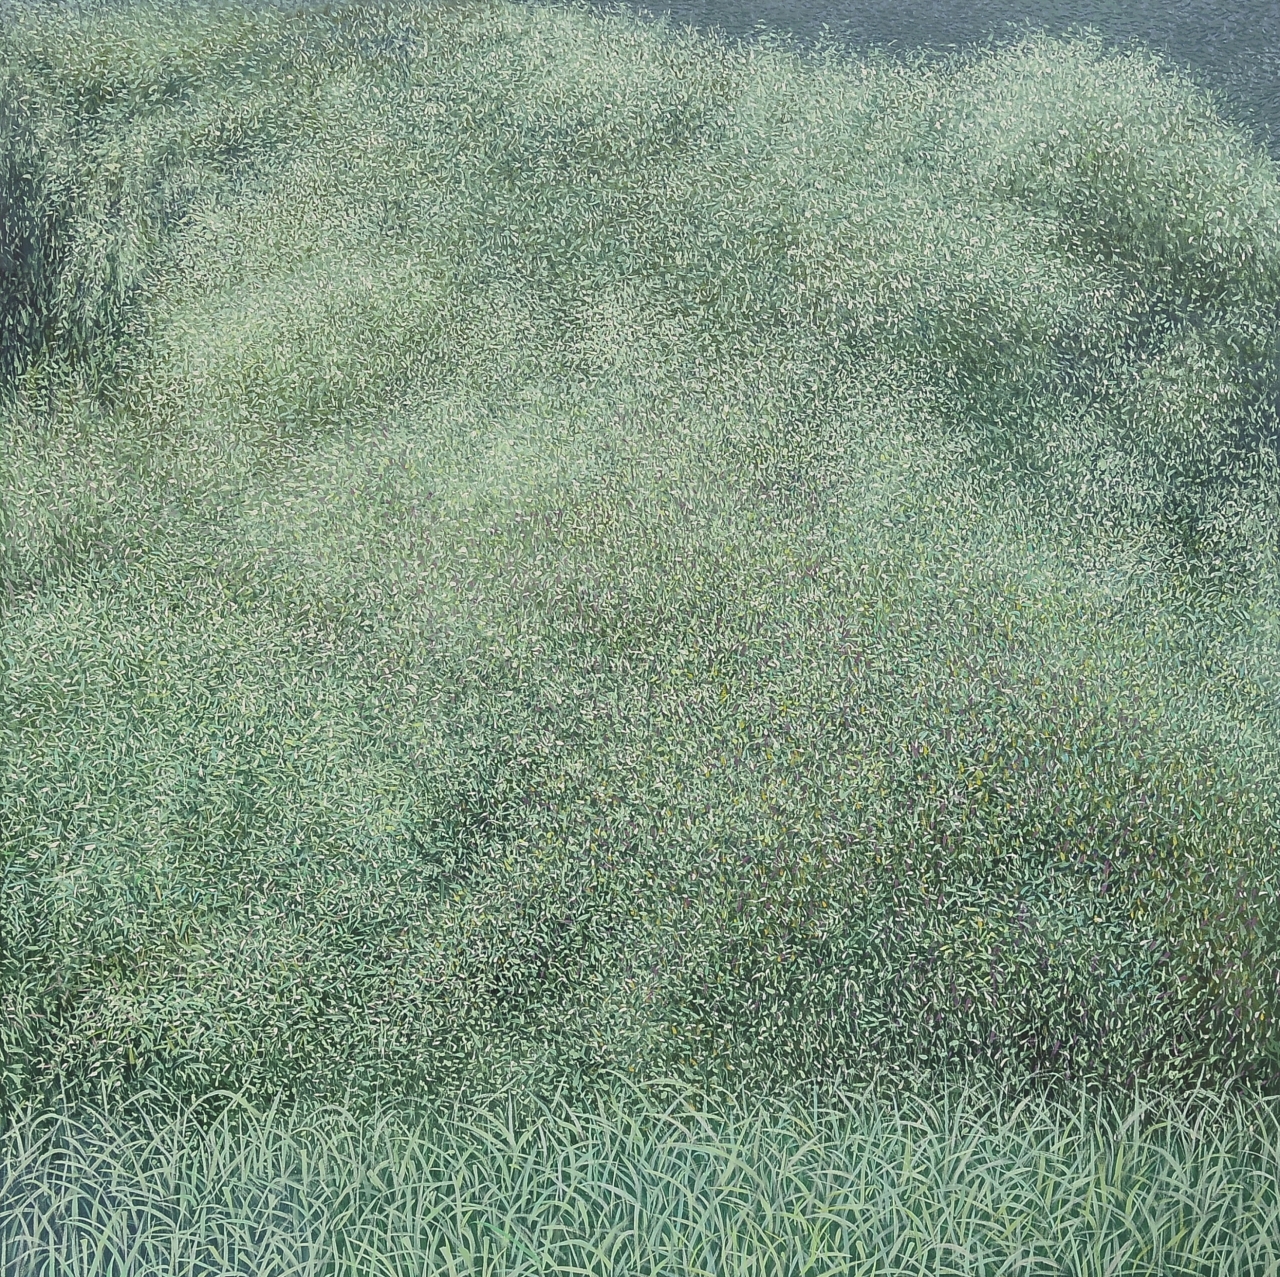 김재현, 숲인상, 2019, oil on canvas, 130.3×130.3cm